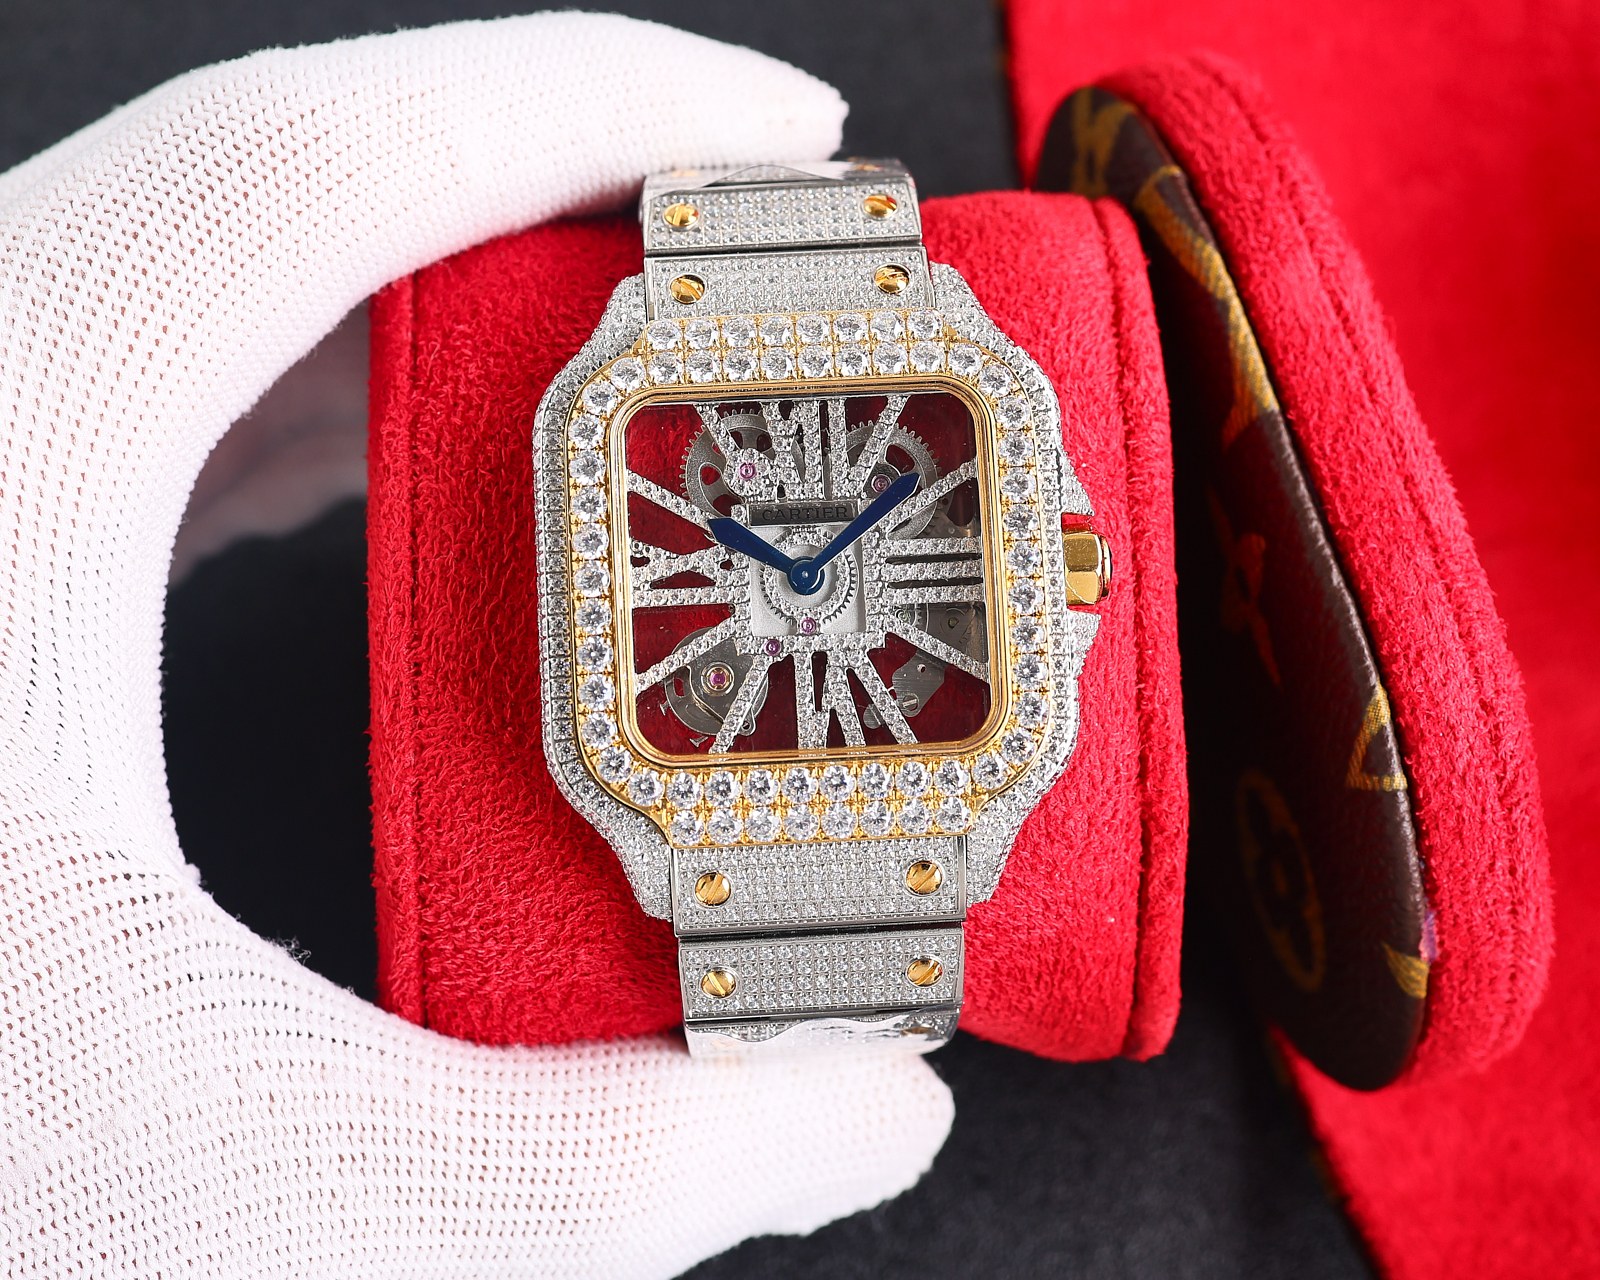 CARTIERカルティエ 腕時計 似てるスーパーコピー フランス 薄いワッチ レザー 四角い時計 スチールバンド_4